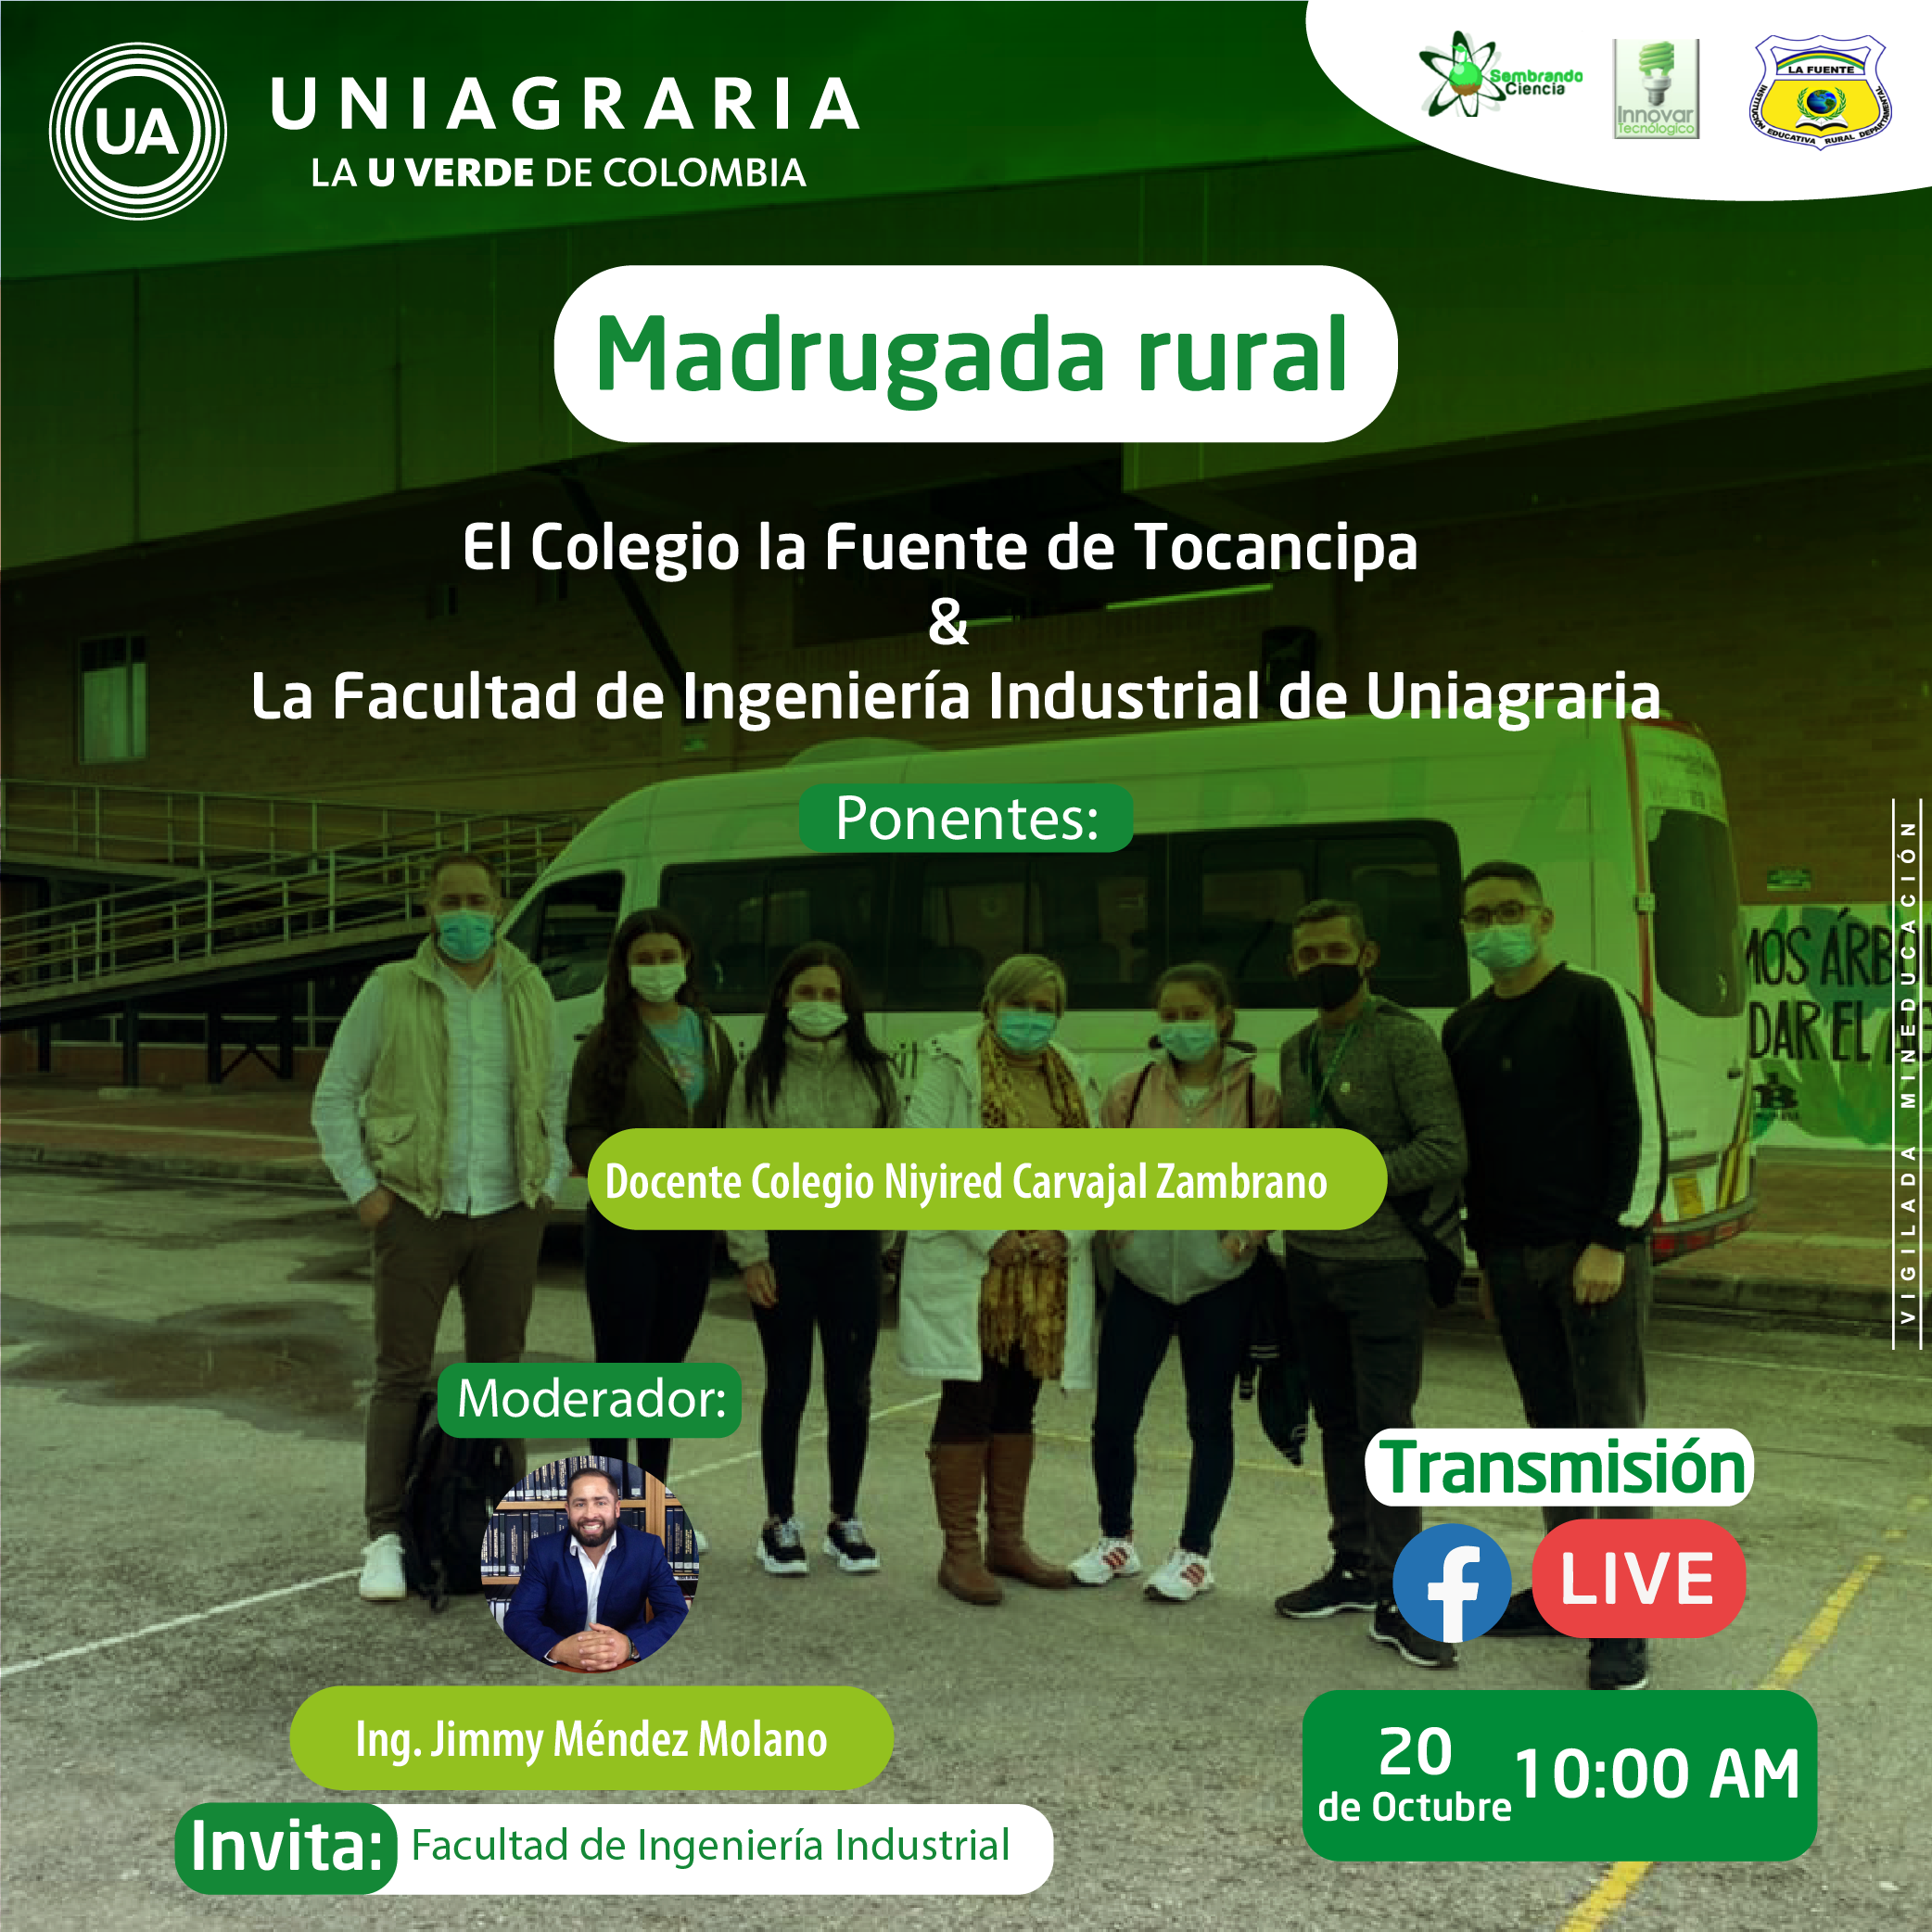 Madrugada rural: El colegio la fuente de Tocancipá & La facultad de Ingeniería Industrial de Uniagraria